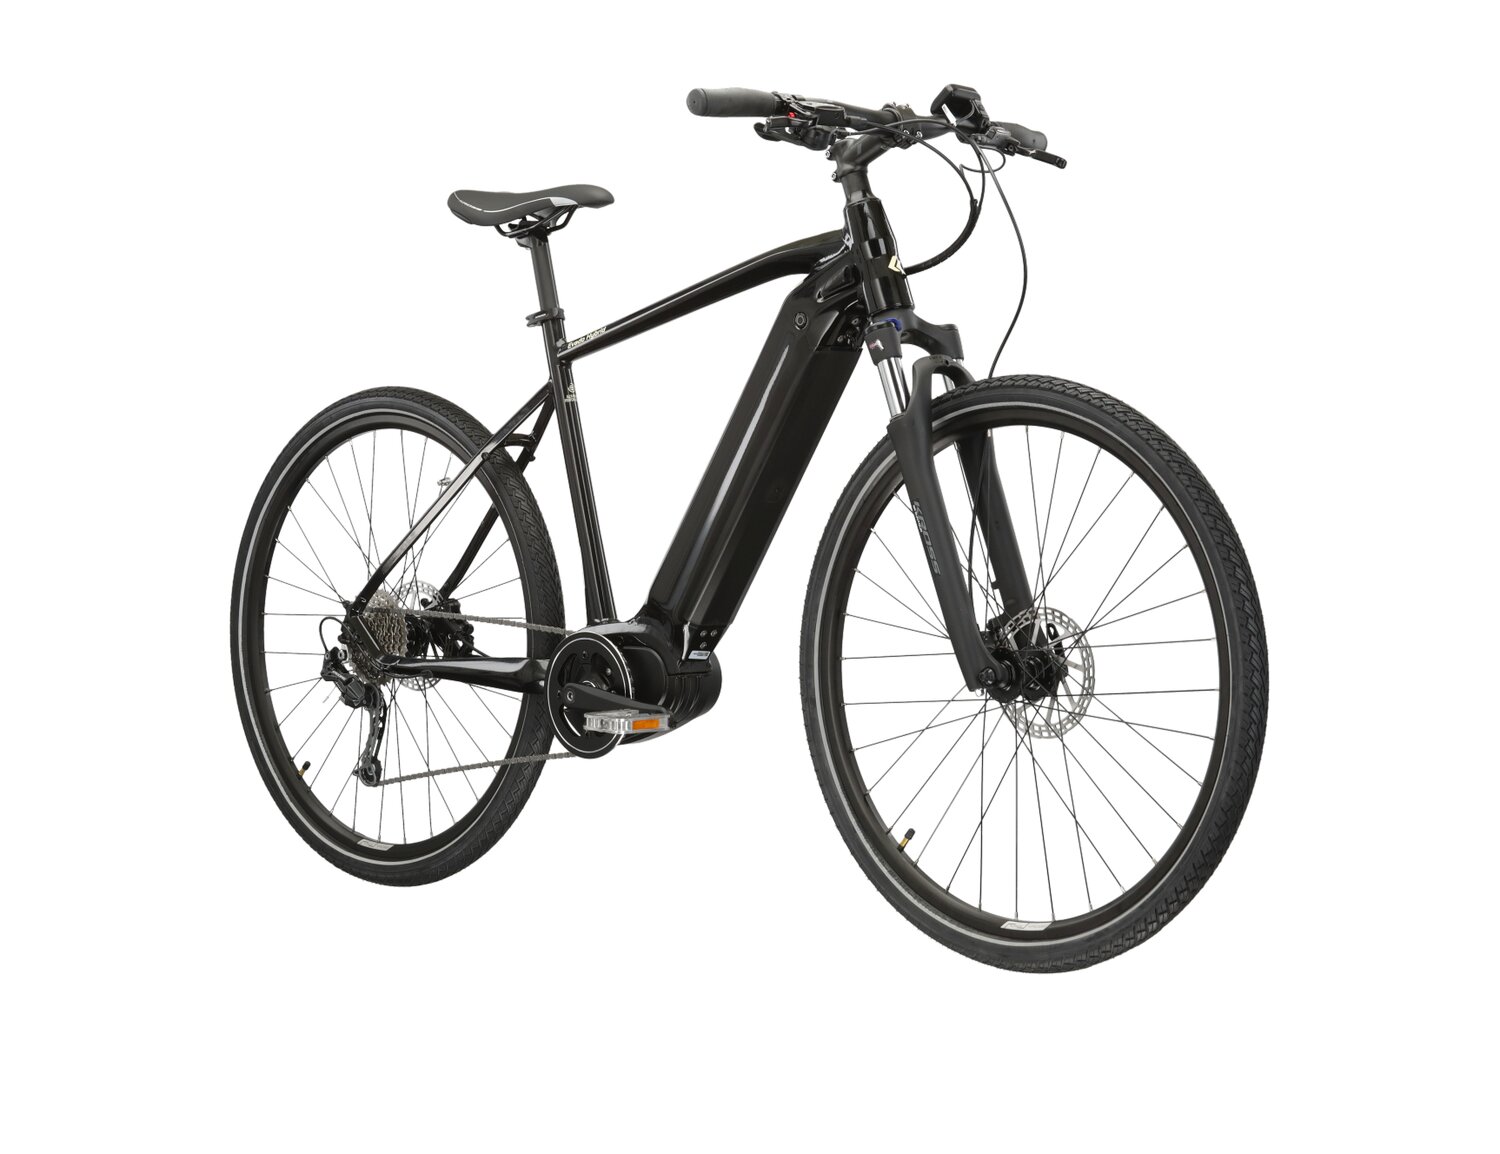  Elektryczny rower crossowy KROSS Evado Hybrid 3.0 882 Wh na aluminiowej ramie w kolorze czarnym wyposażony w osprzęt Shimano i napęd elektryczny Bafang